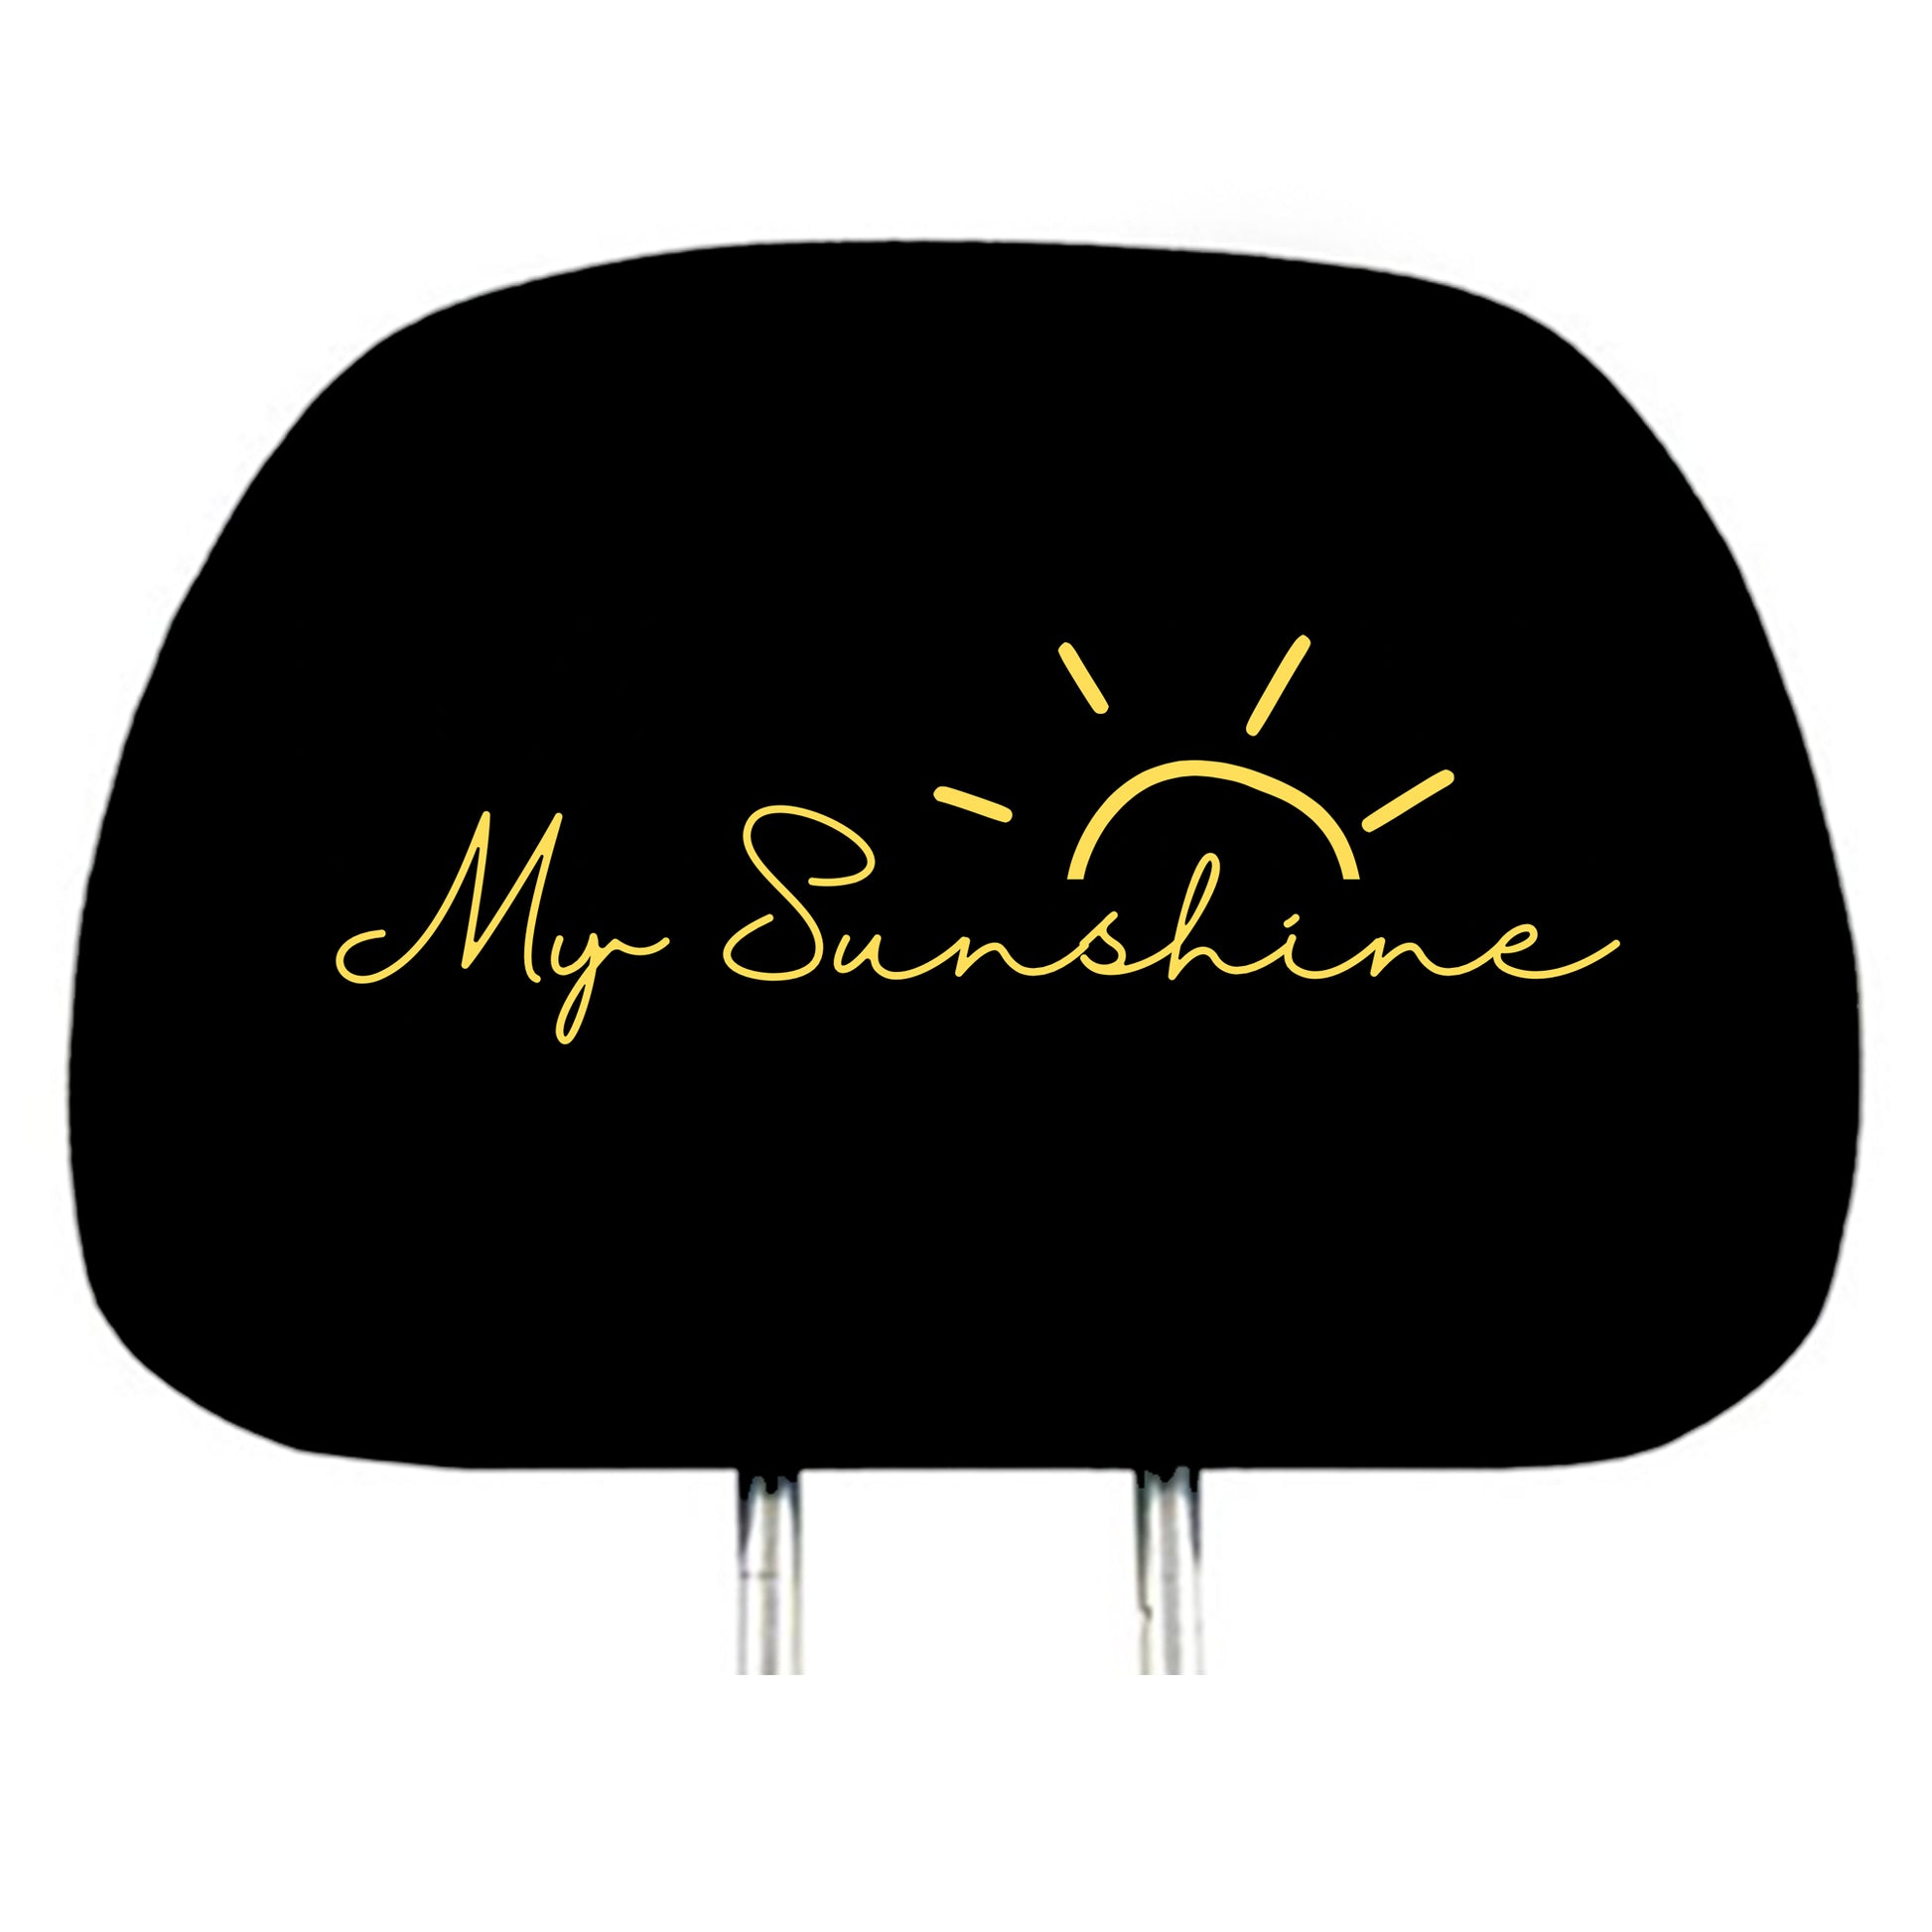 My Sunshine design headrest cover detail